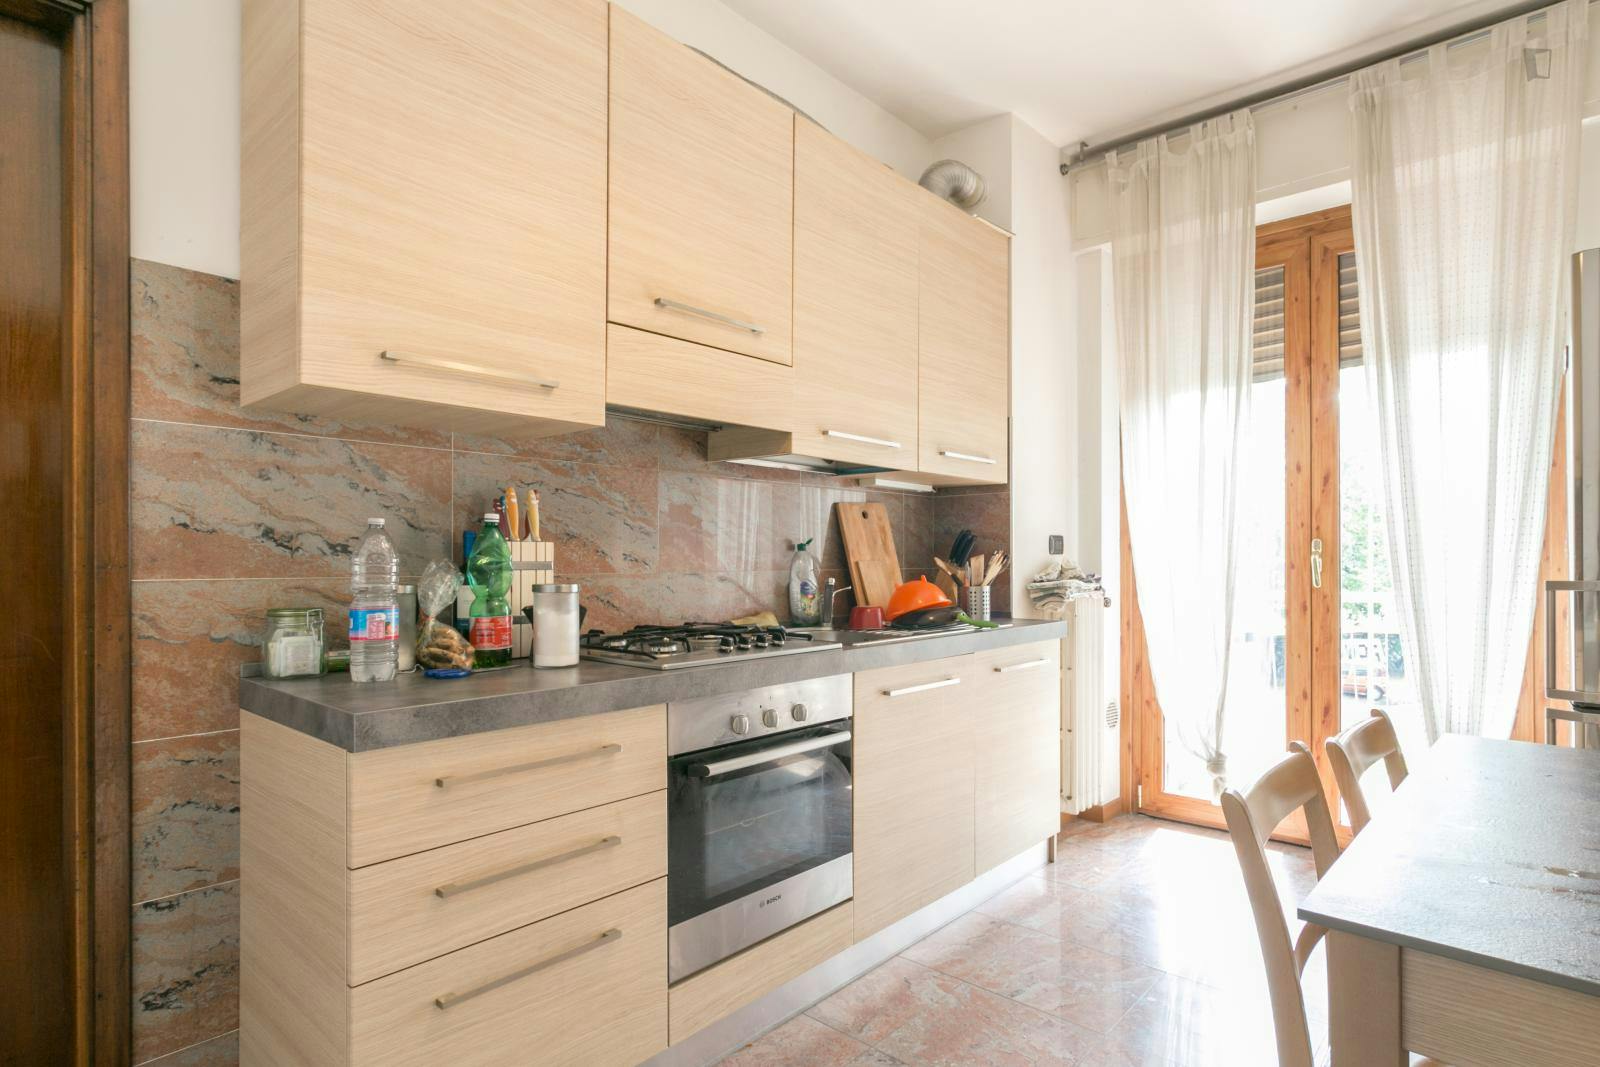 Elegant double bedroom in a 6-bedroom flat, in Stadio San Giro